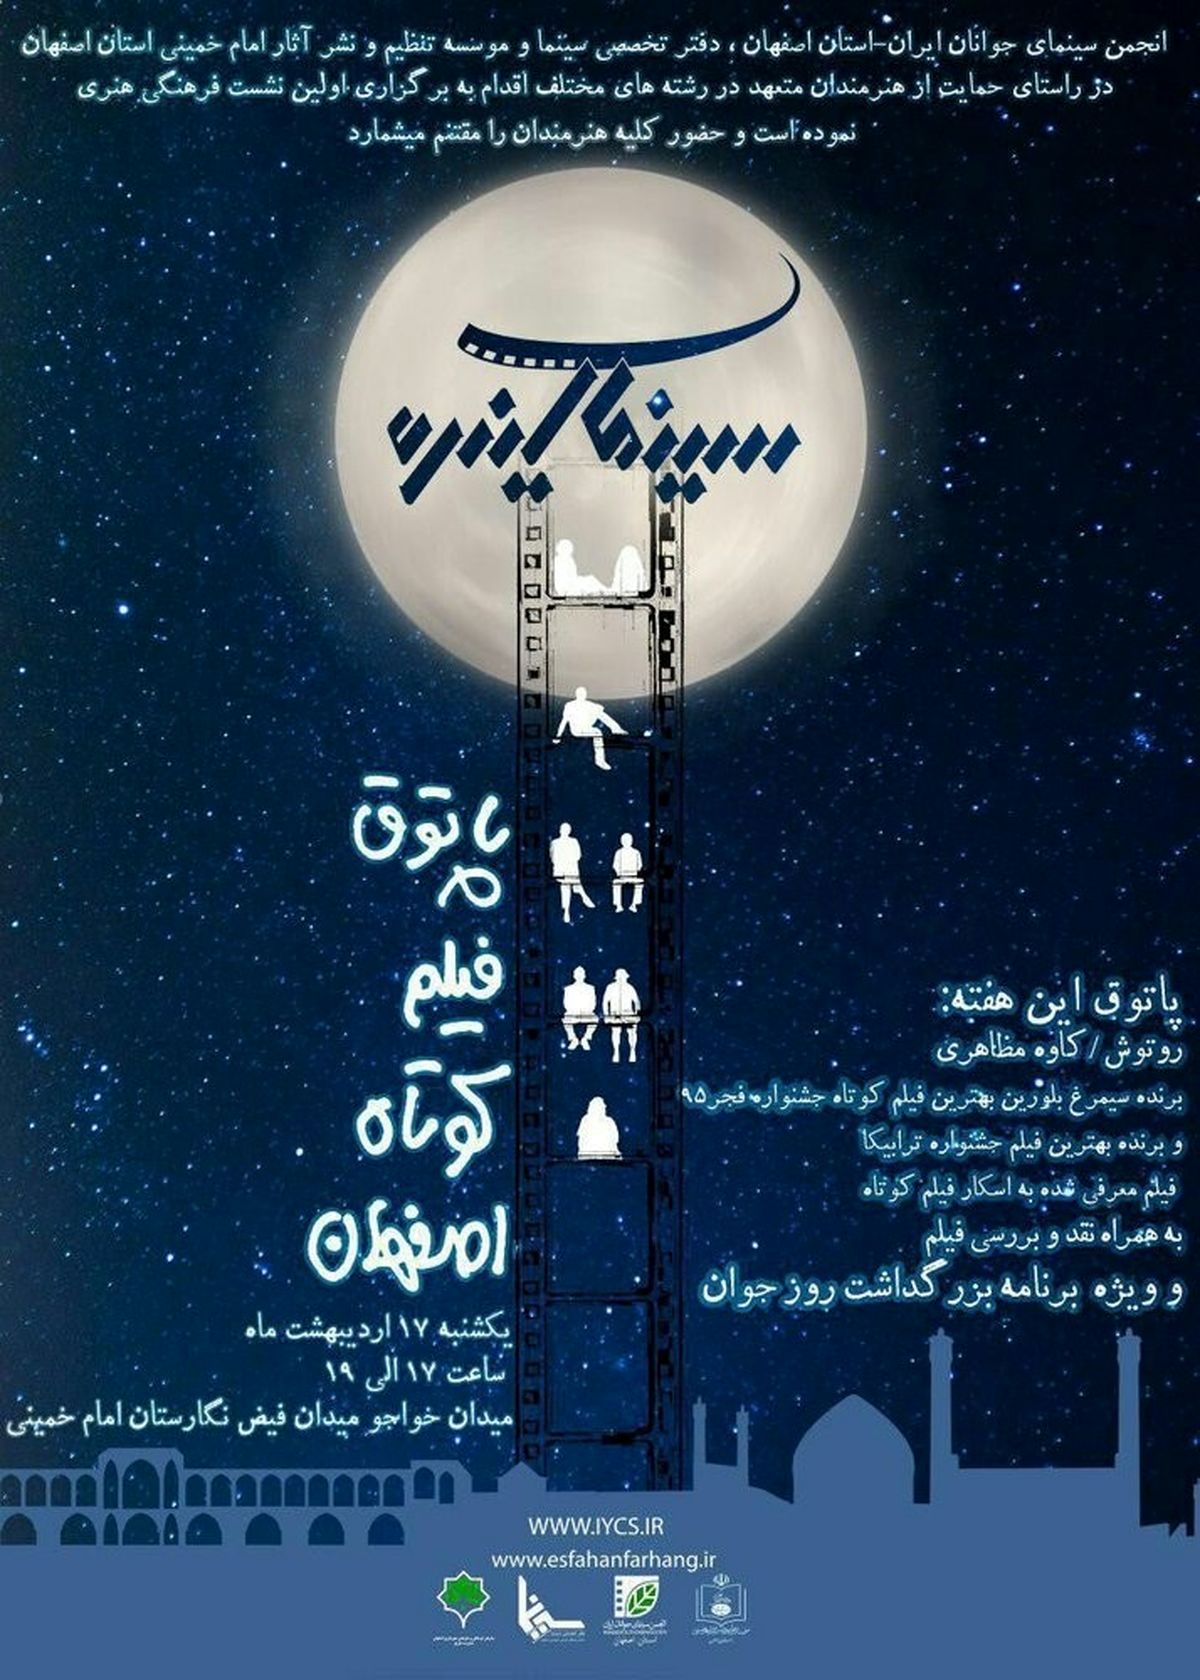 ویژه برنامۀ بزرگداشت روز جوان در «پاتوق فیلم کوتاه اصفهان»